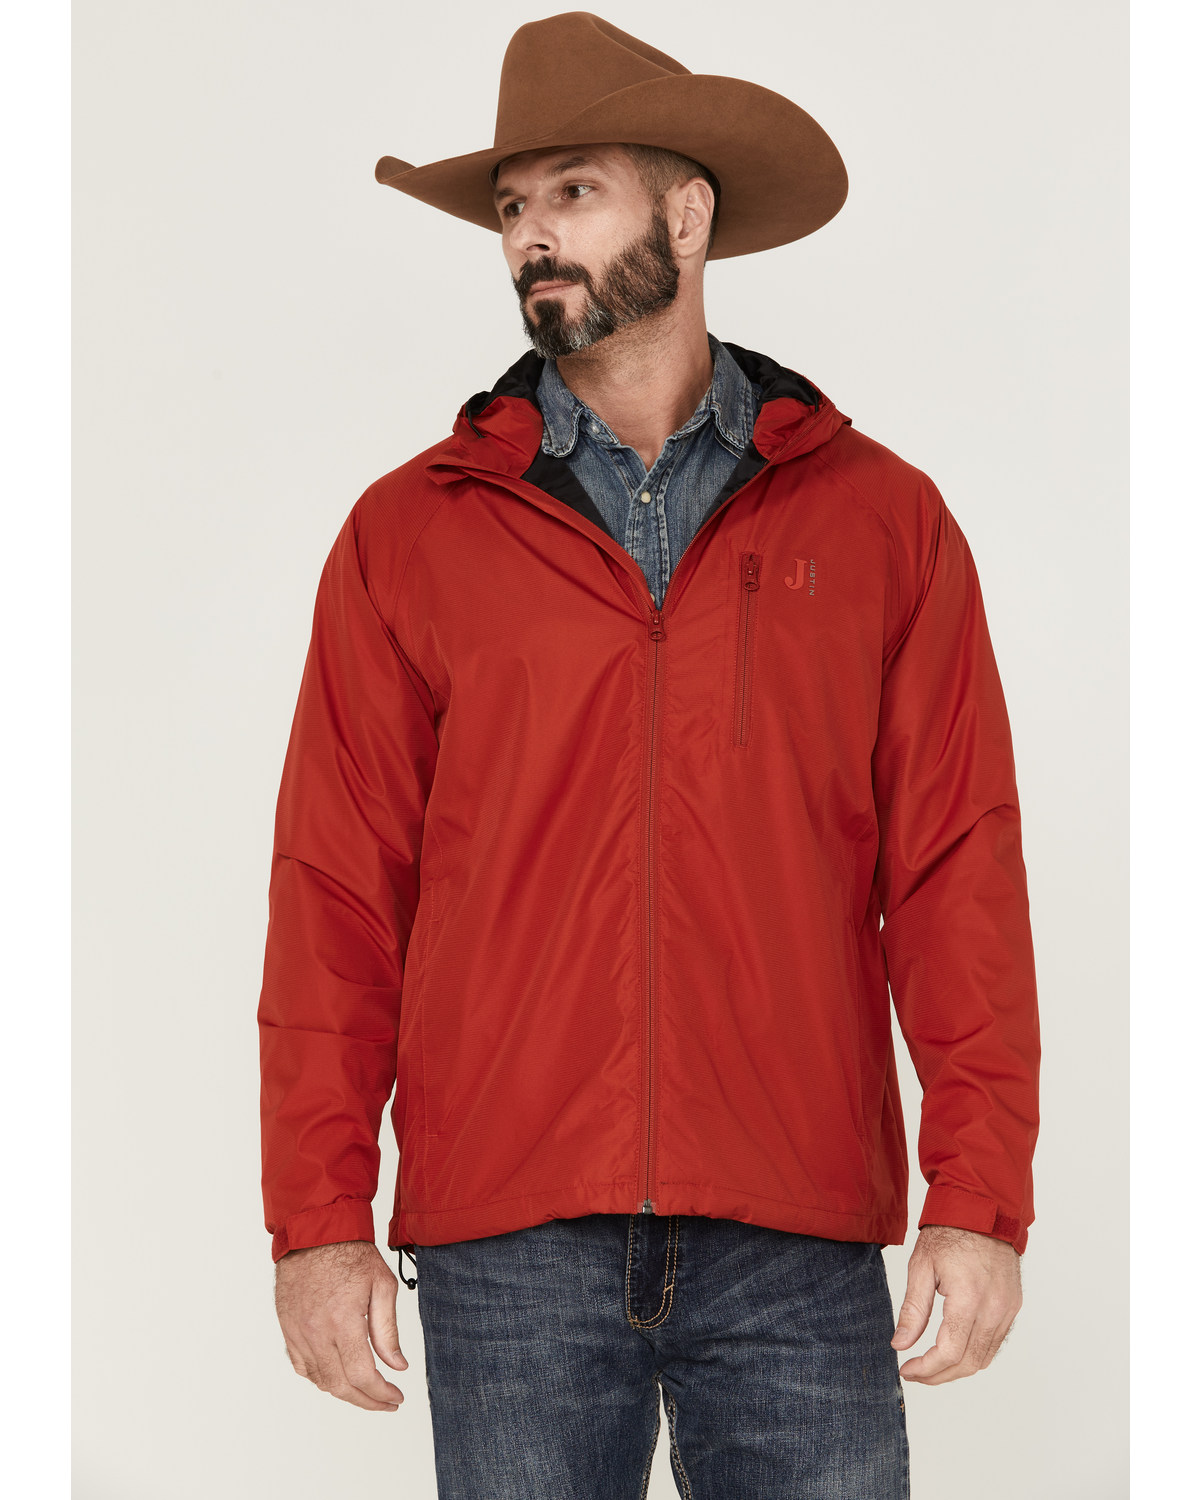 Justin Men's Solid Zip-Front Hooded Rain Jacket